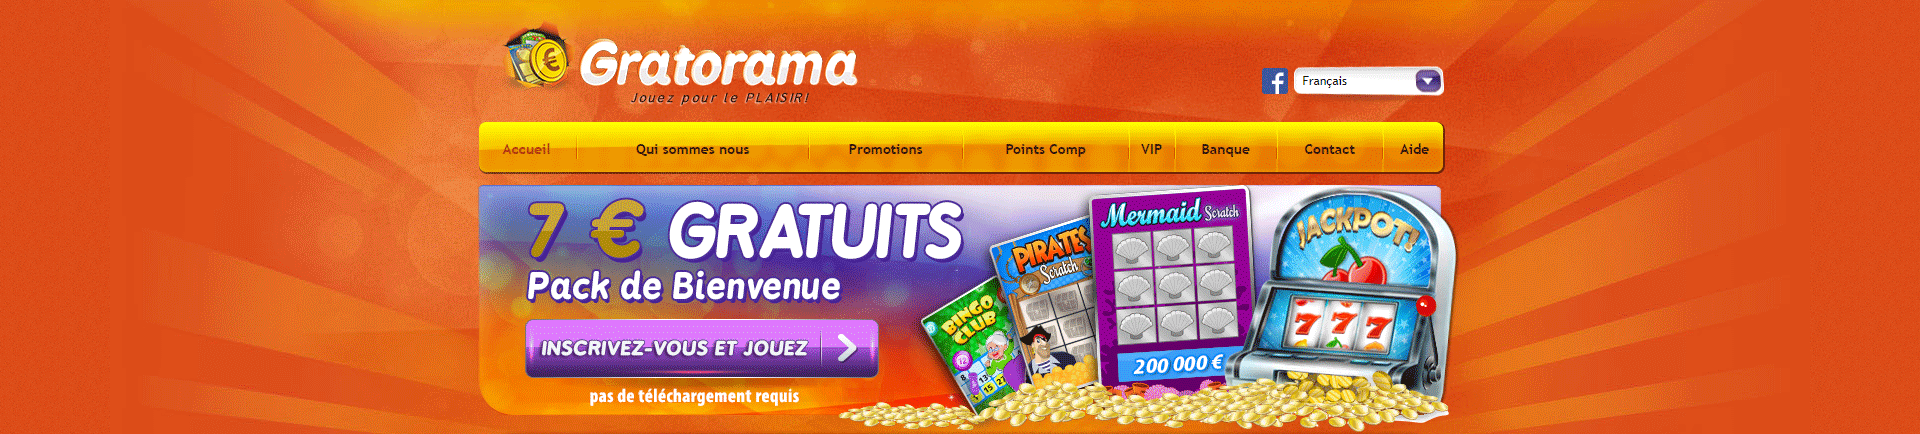 Gratorama Casino Belgique